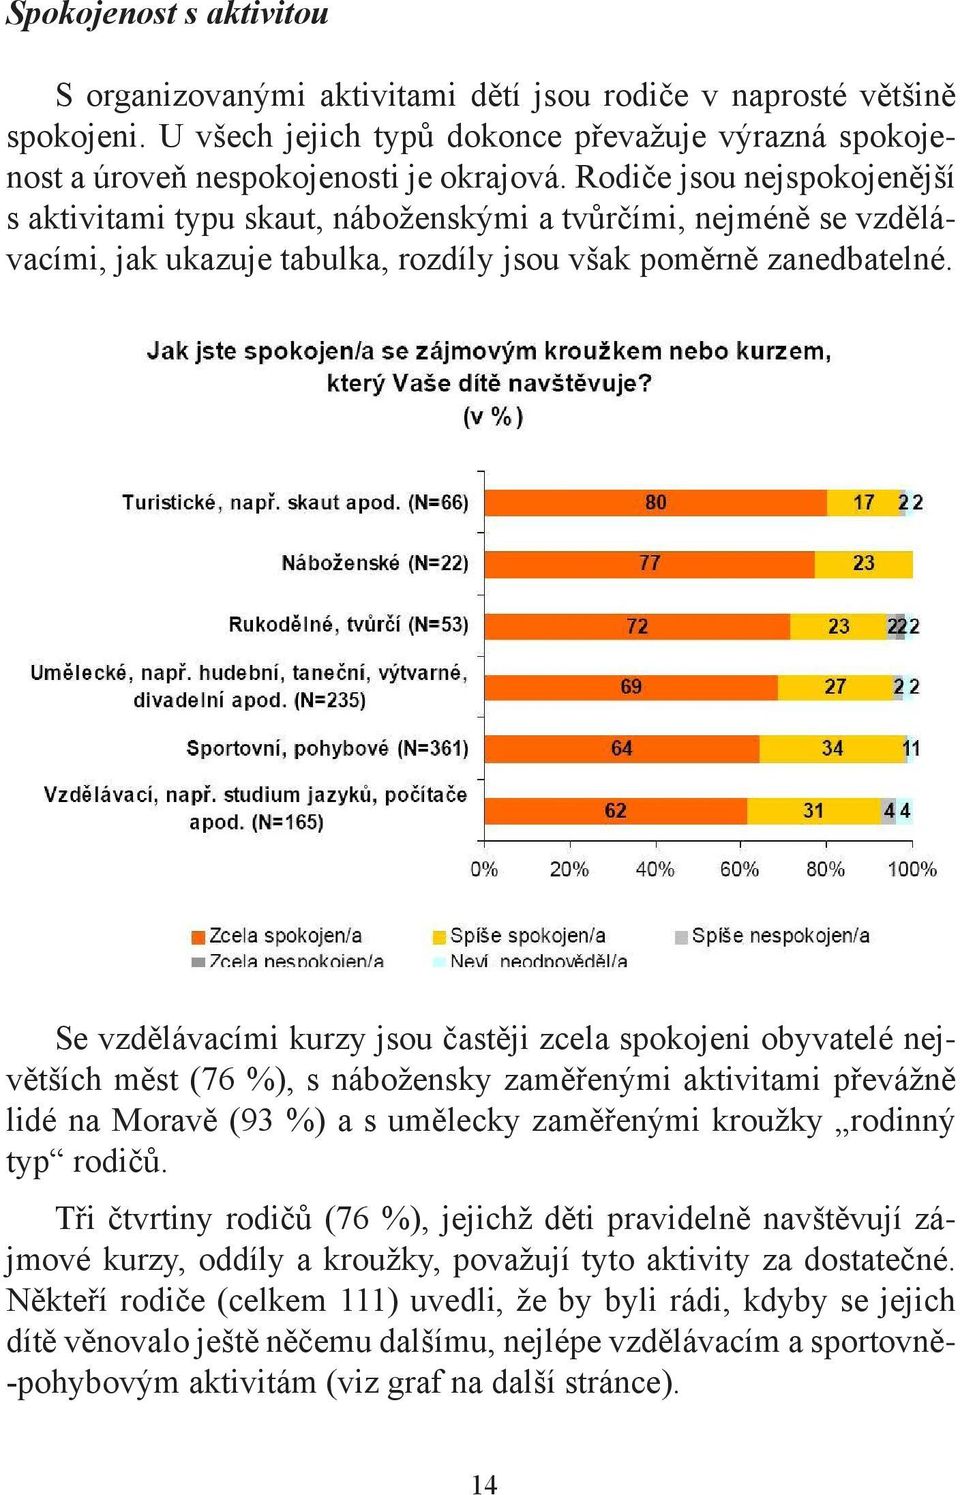 Se vzdělávacími kurzy jsou častěji zcela spokojeni obyvatelé největších měst (76 %), s nábožensky zaměřenými aktivitami převážně lidé na Moravě (93 %) a s umělecky zaměřenými kroužky rodinný typ